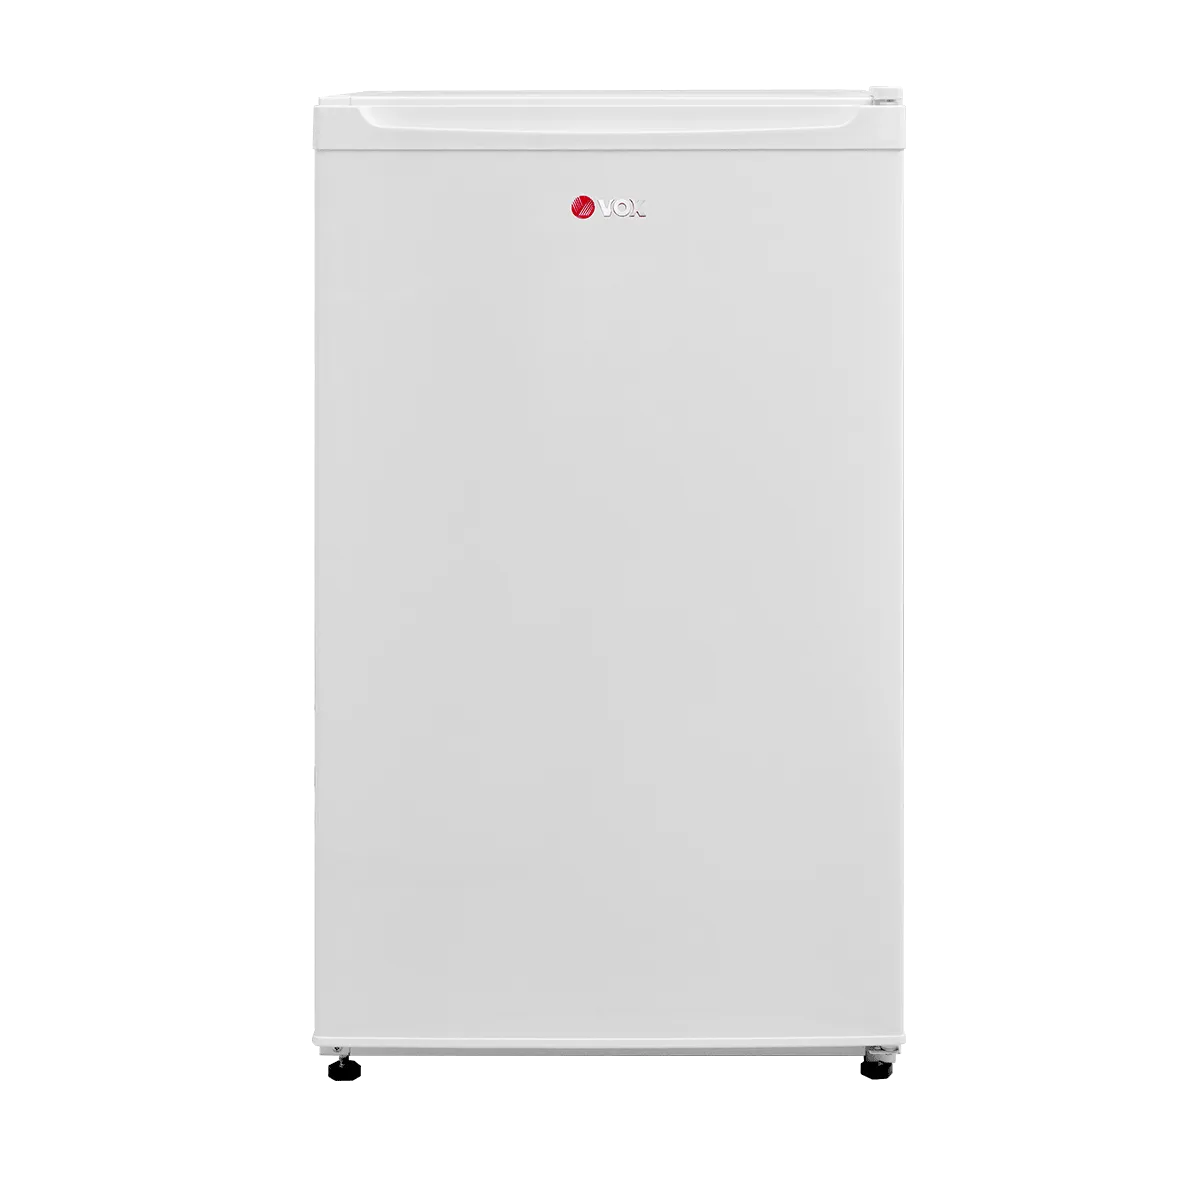 Refrigerator KS 1100 E 